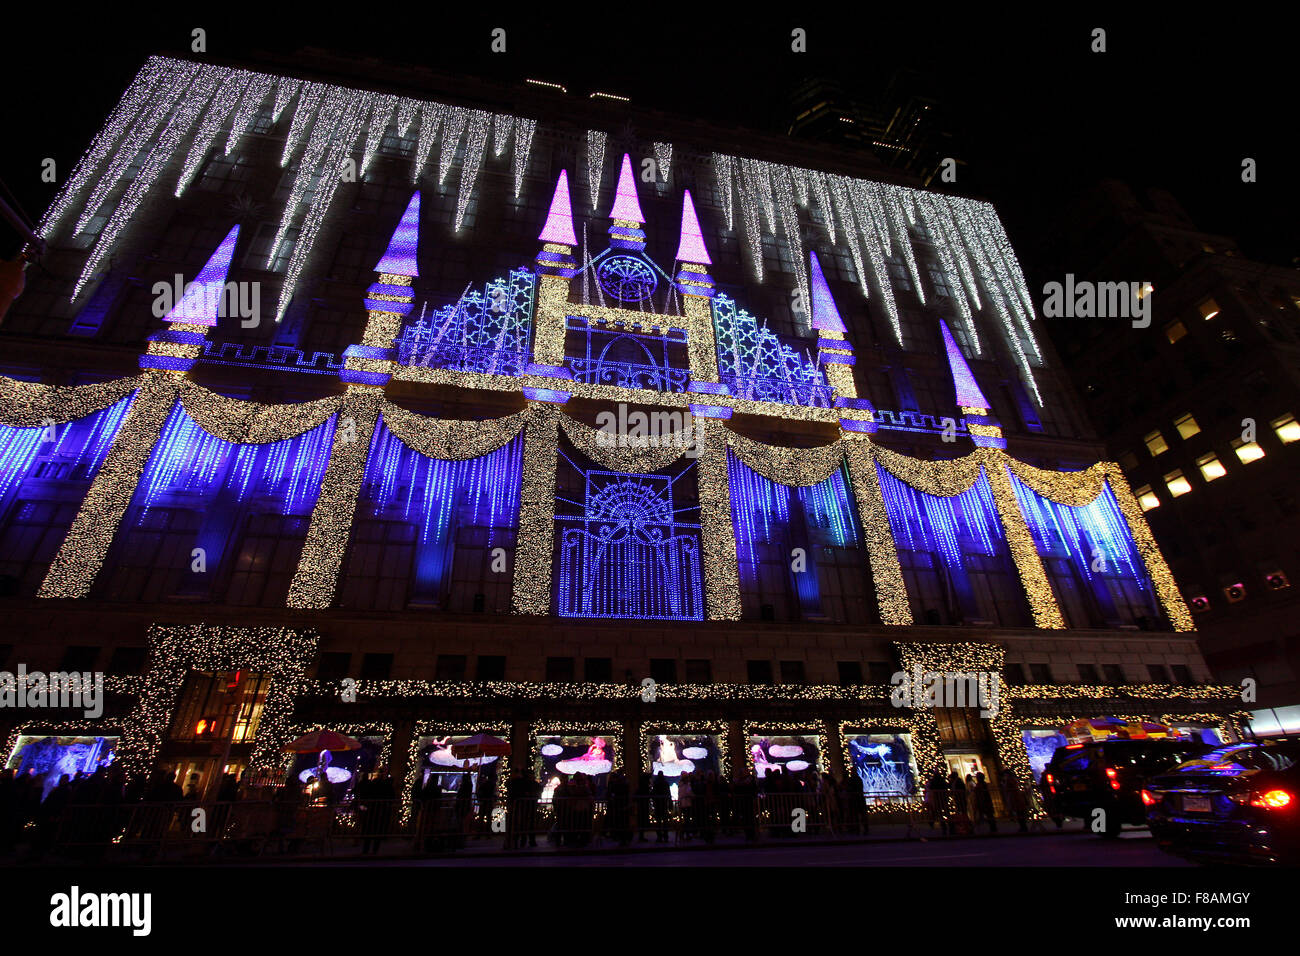 New York, New York, USA. 07Th Dec, 2015. Les lumières de Noël mis en musique ornent la face de Saks Fifth Avenue à New York City en face du Rockefeller Center. Crédit : Adam Stoltman/Alamy Live News Banque D'Images